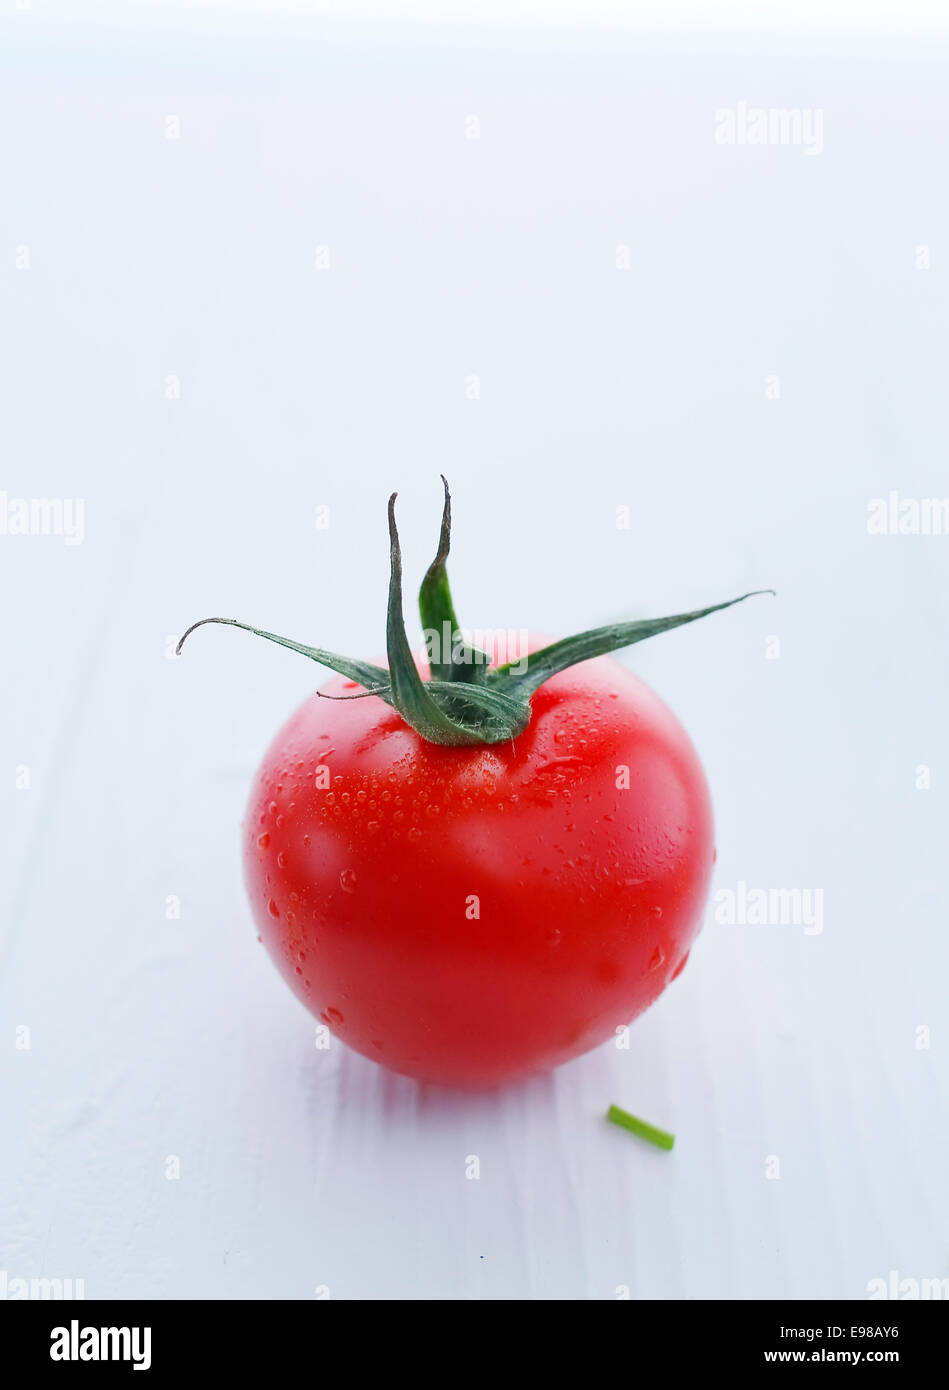 Wunderschöne rote Tomate mit Stiel, geringe Schärfentiefe gegen White erschossen. Stockfoto